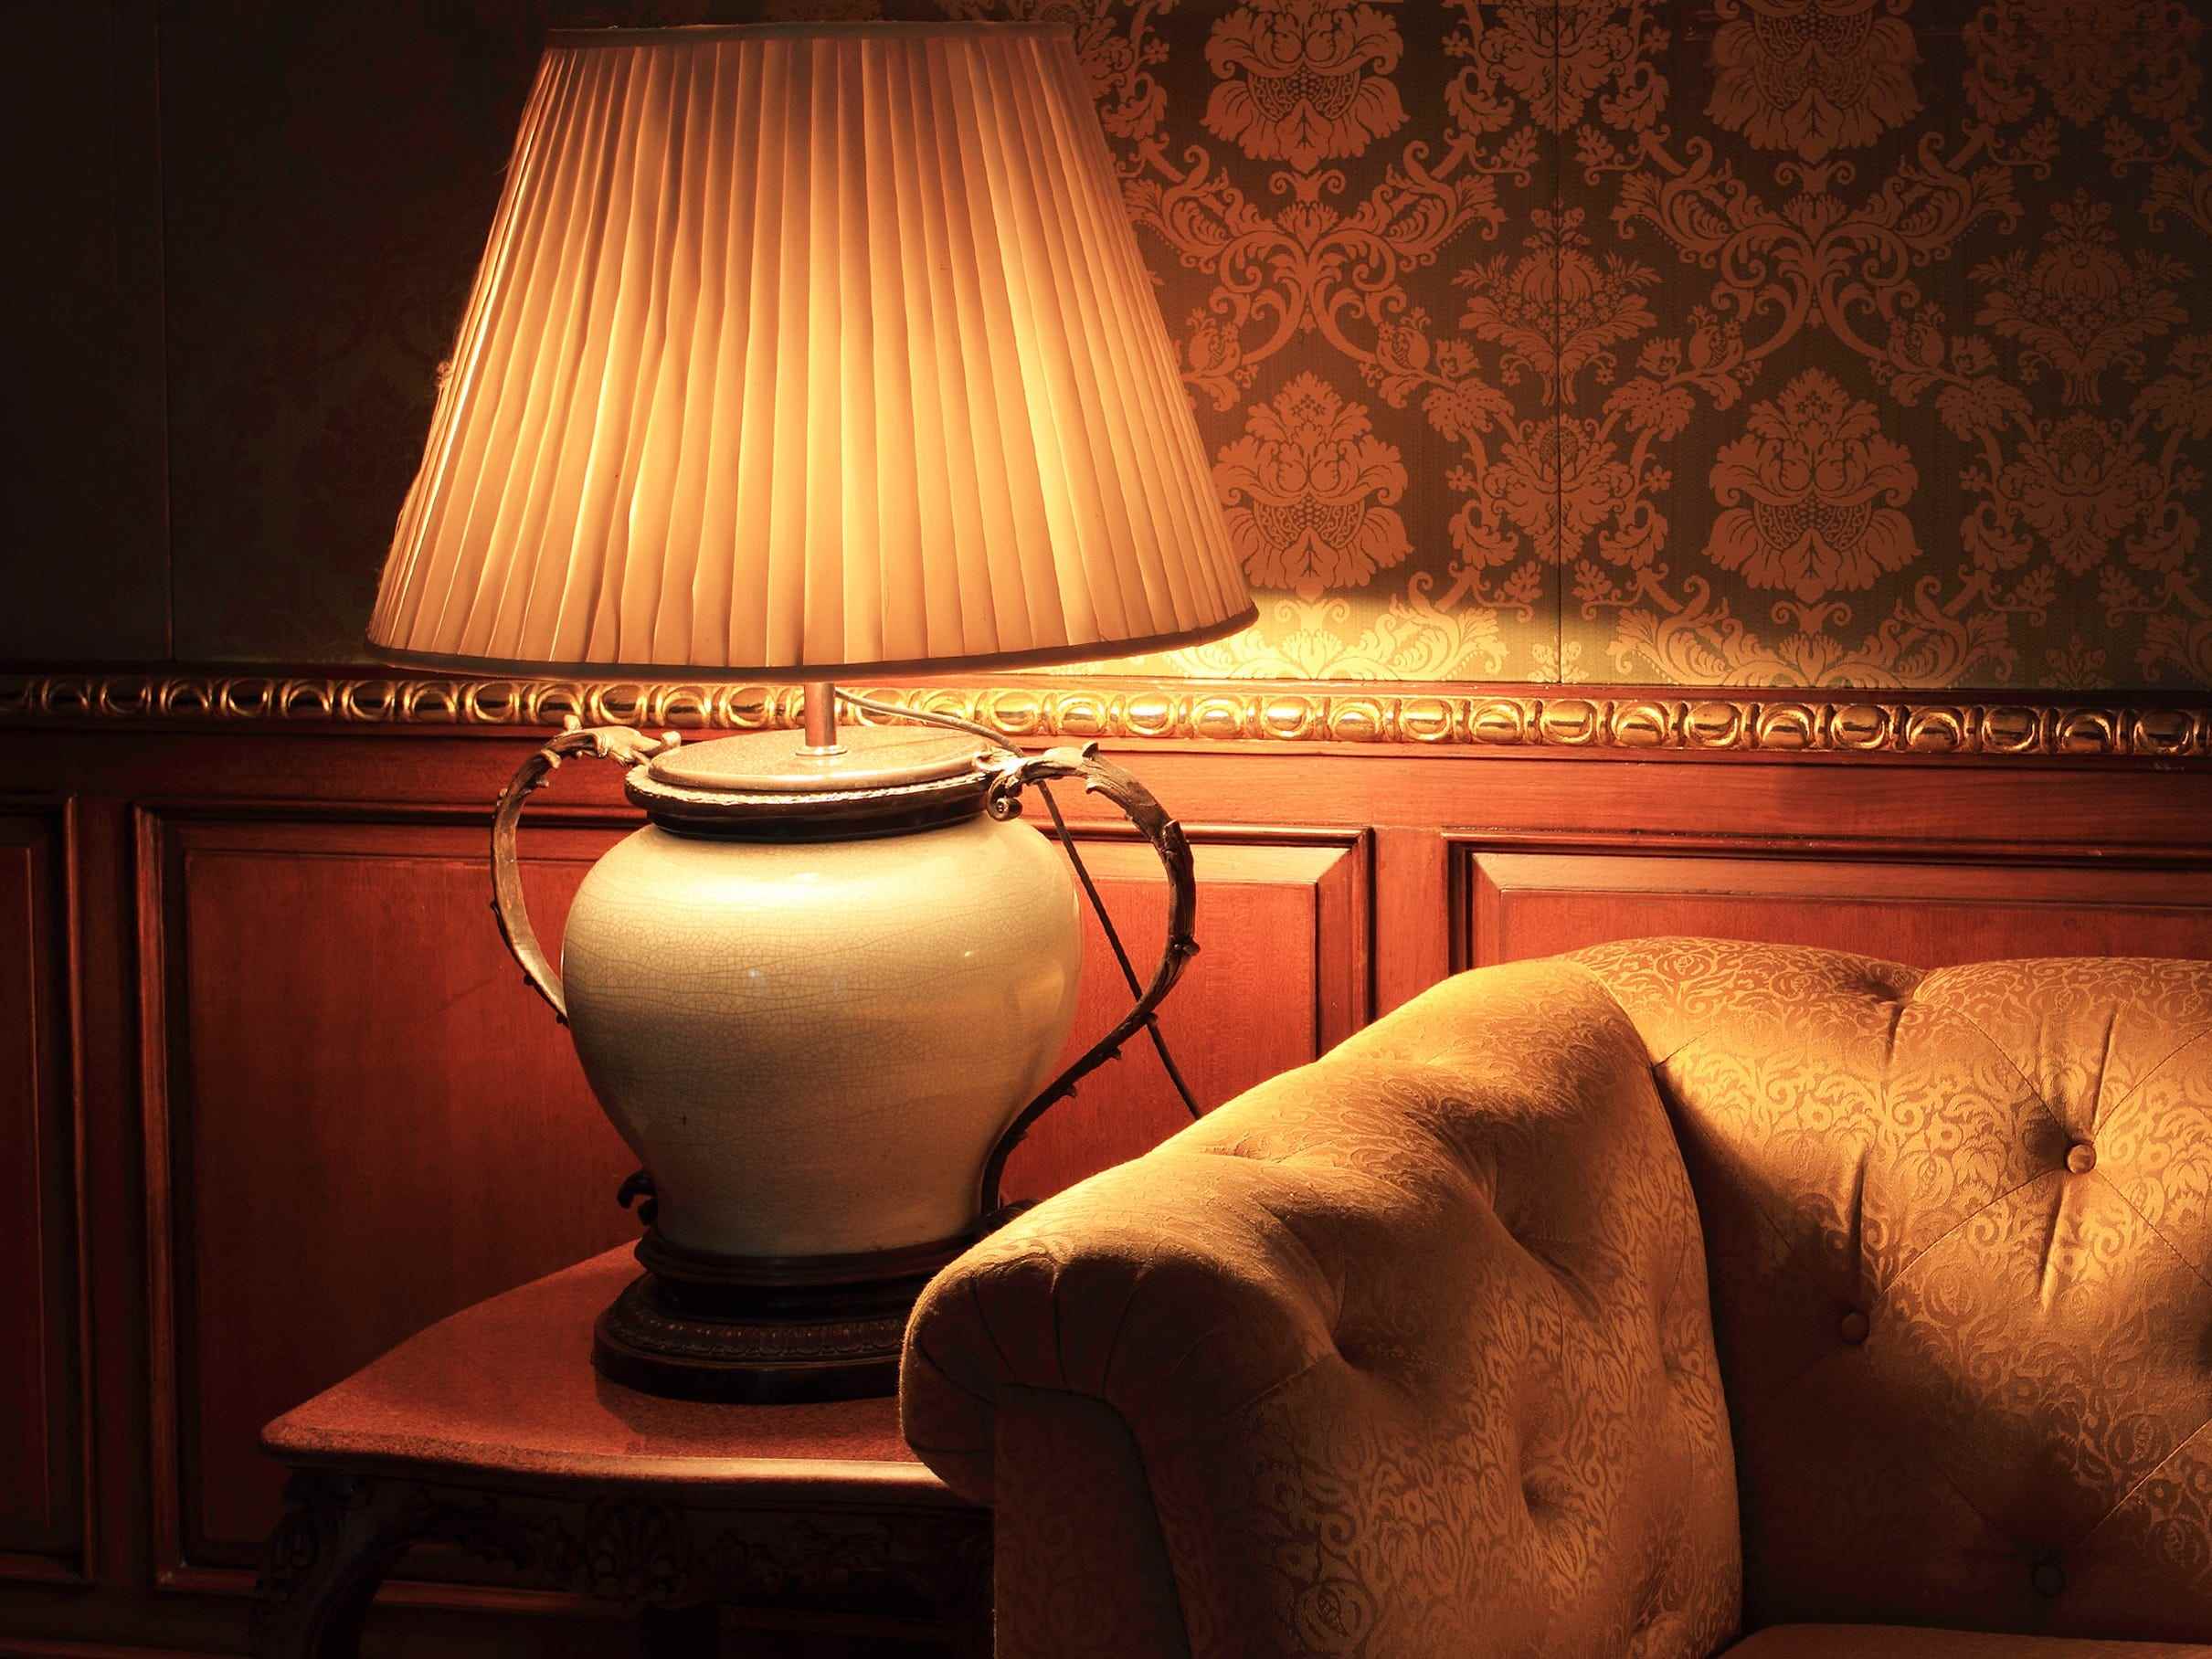 Vintage Lampe auf einem Beistelltisch neben einer Couch